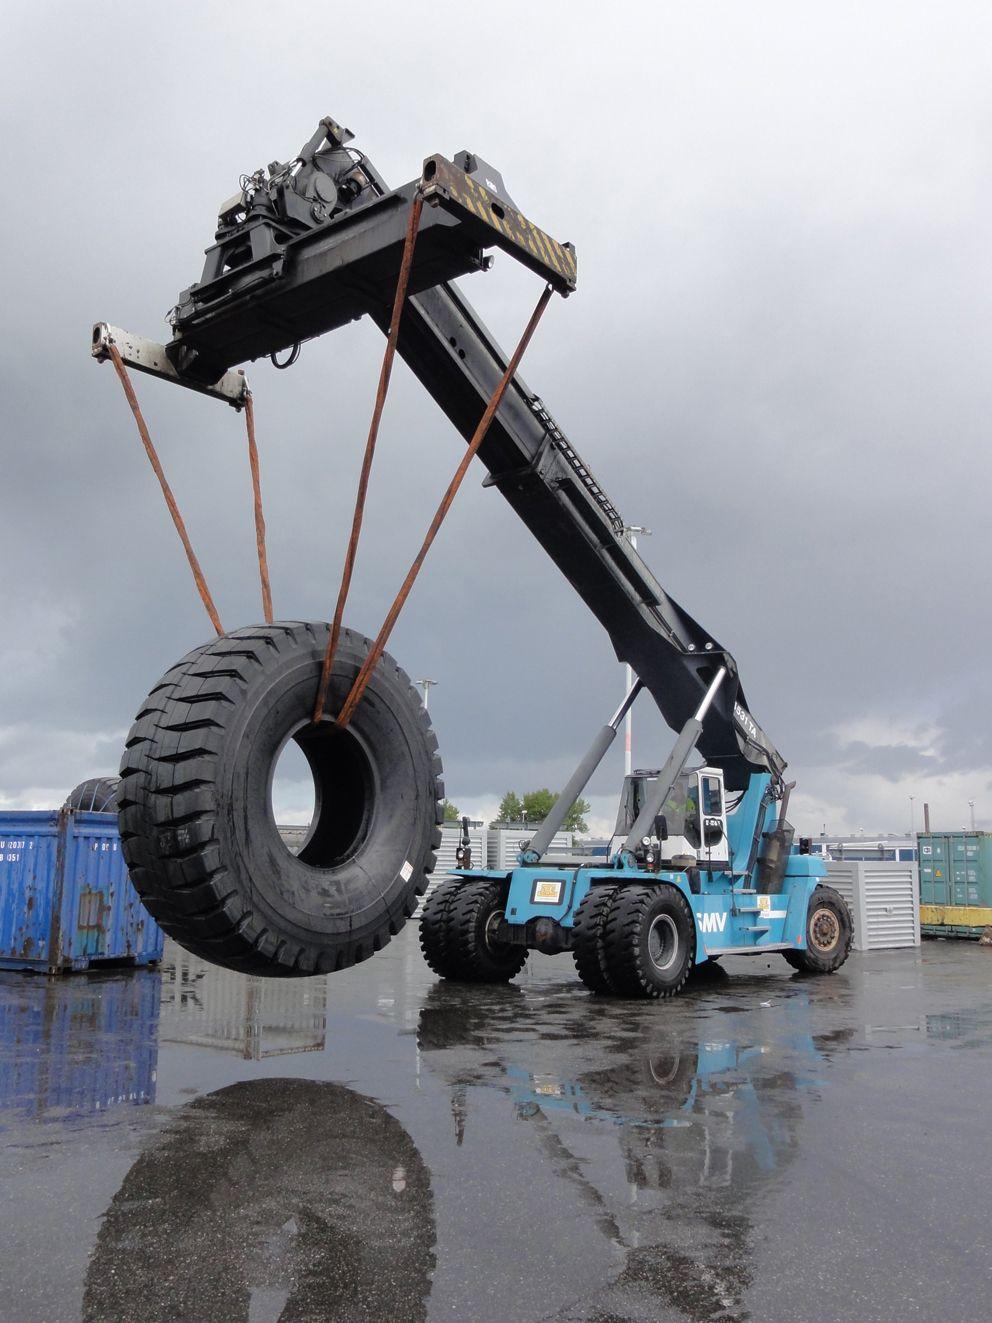 Michelin présente le plus grand pneu tracteur au monde